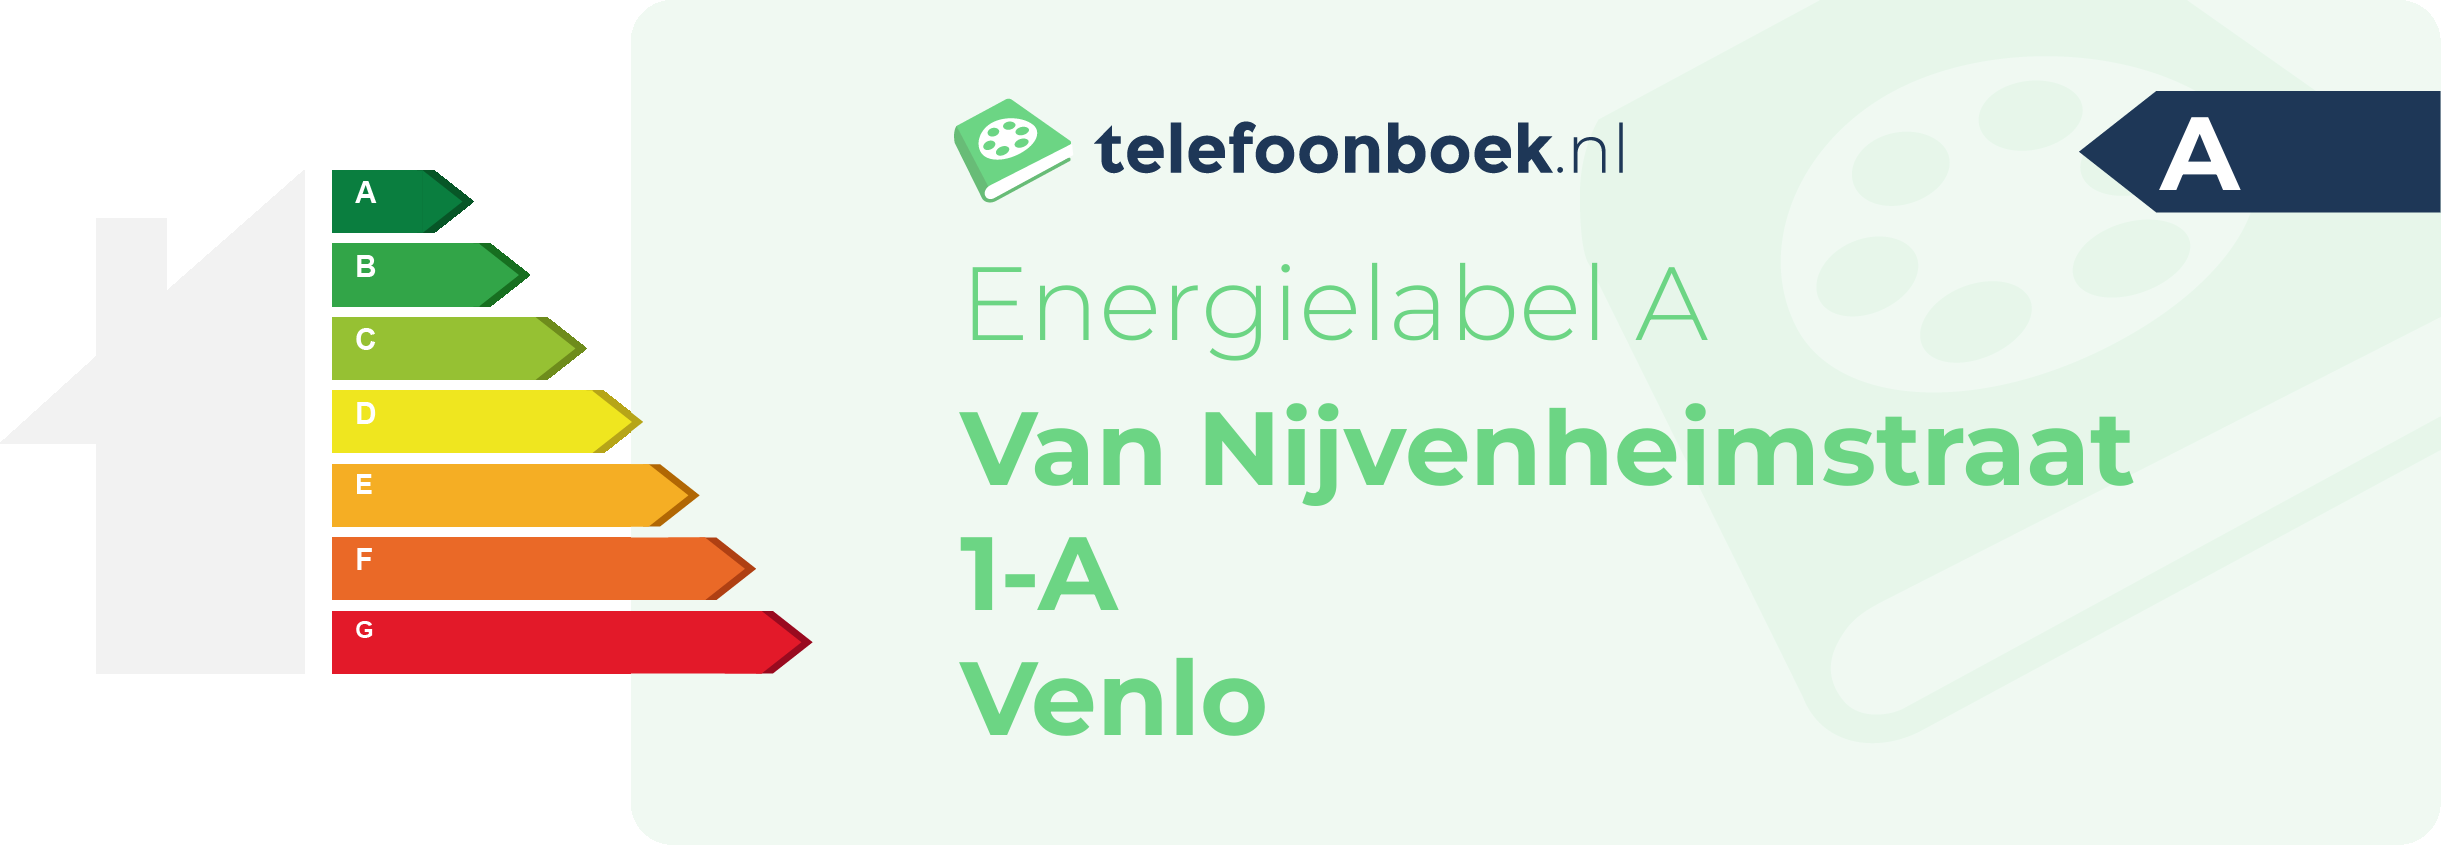 Energielabel Van Nijvenheimstraat 1-A Venlo